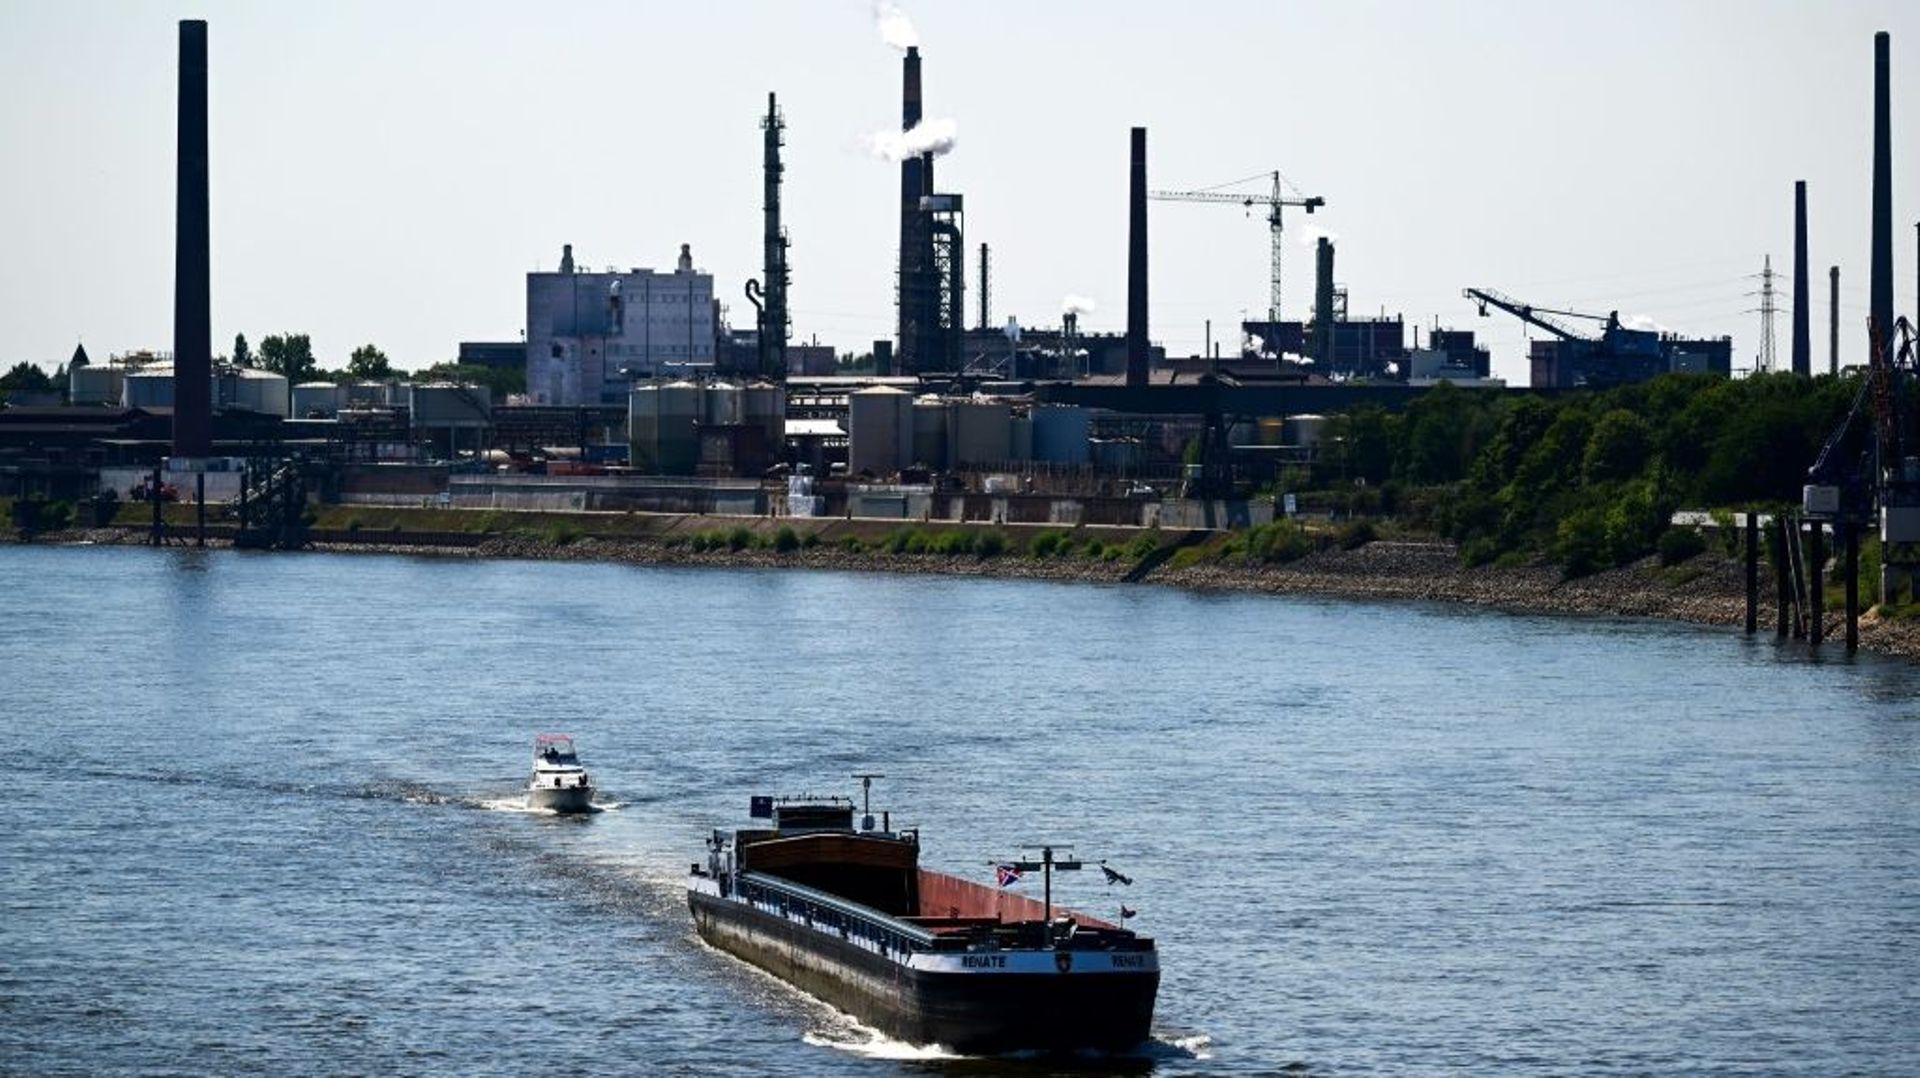 Un navire de transport déchargé se déplace sur les eaux basses du Rhin à Duisburg, dans l'ouest de l'Allemagne le 9 août 2022 